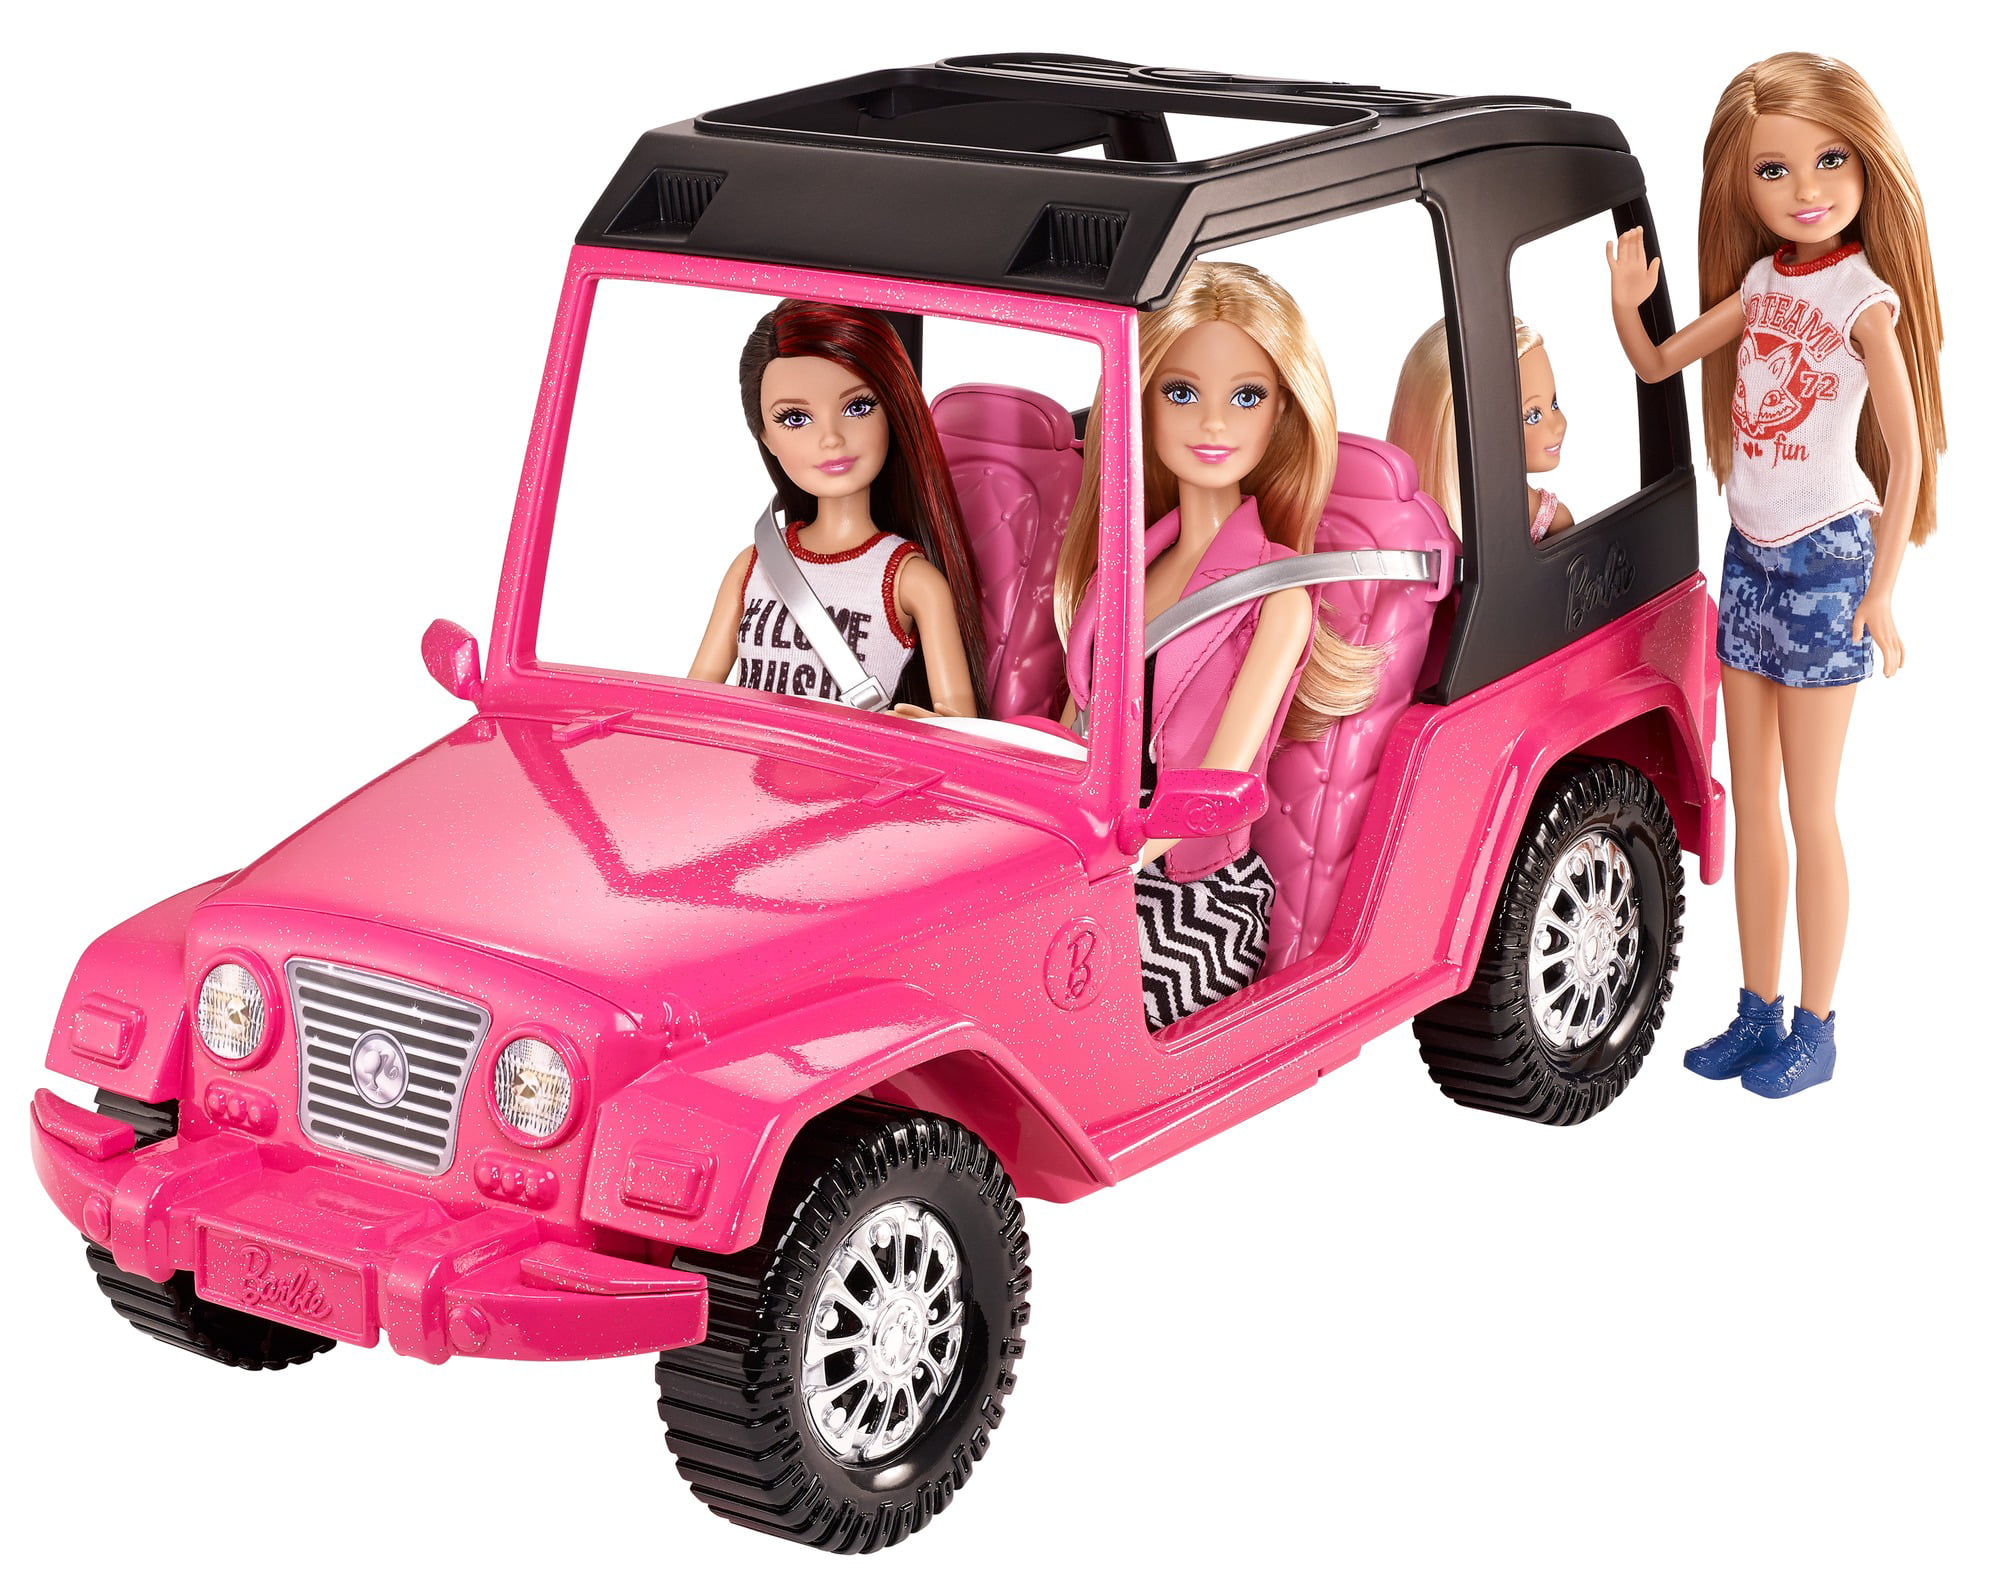 Barbie Car Toys - Holland Teenpornclips